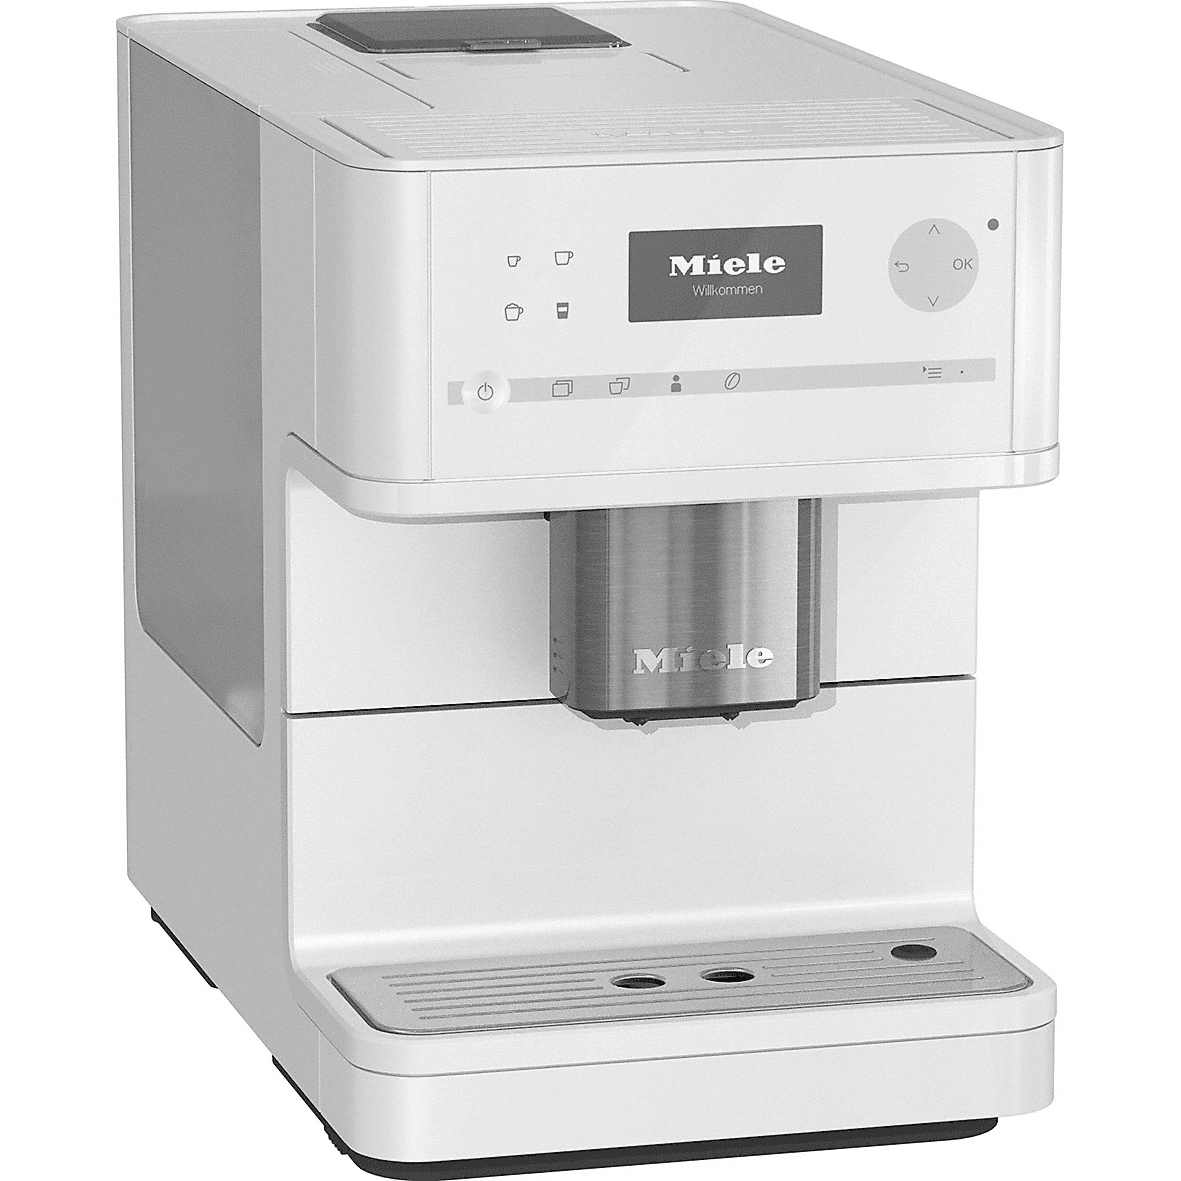 Miele Cm6150 Countertop Espresso Machine - Lotus White